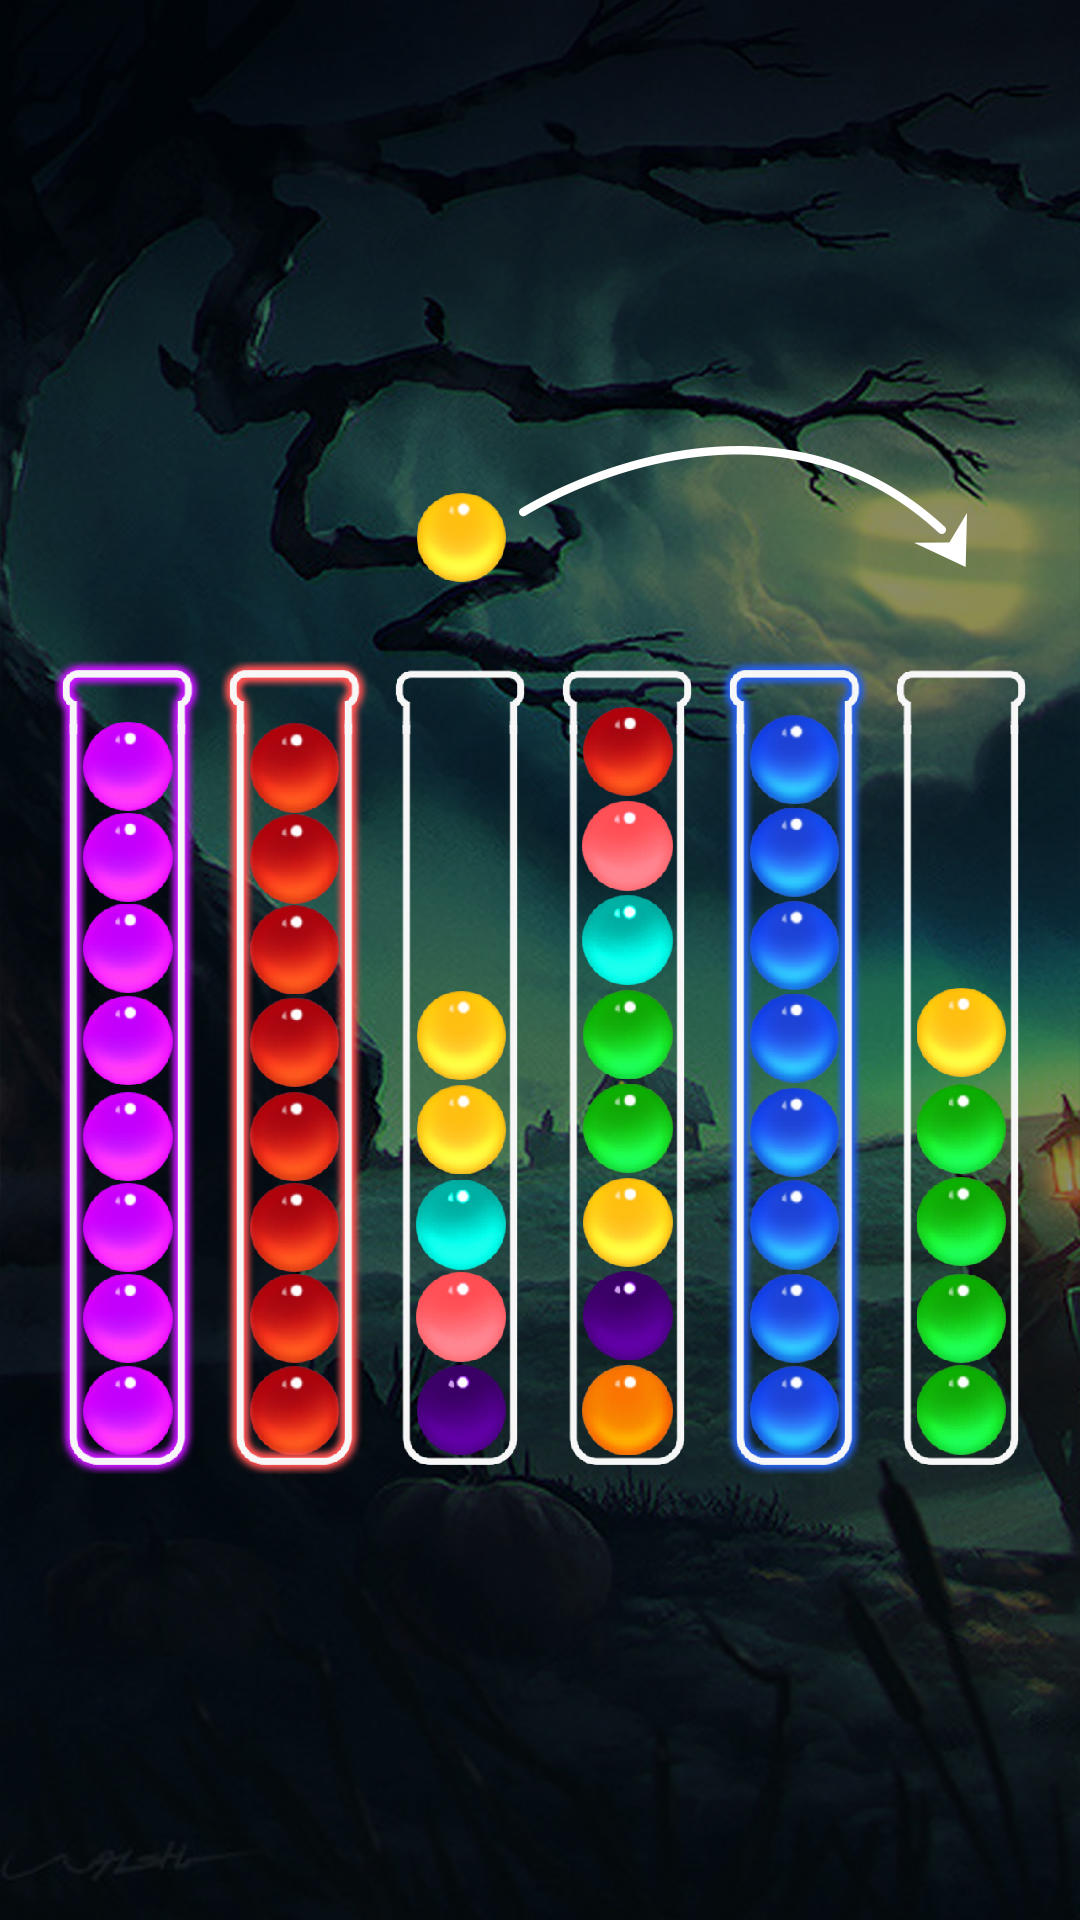 Screenshot 1 of Puzzle a colori con ordinamento a bolle 22.0.0